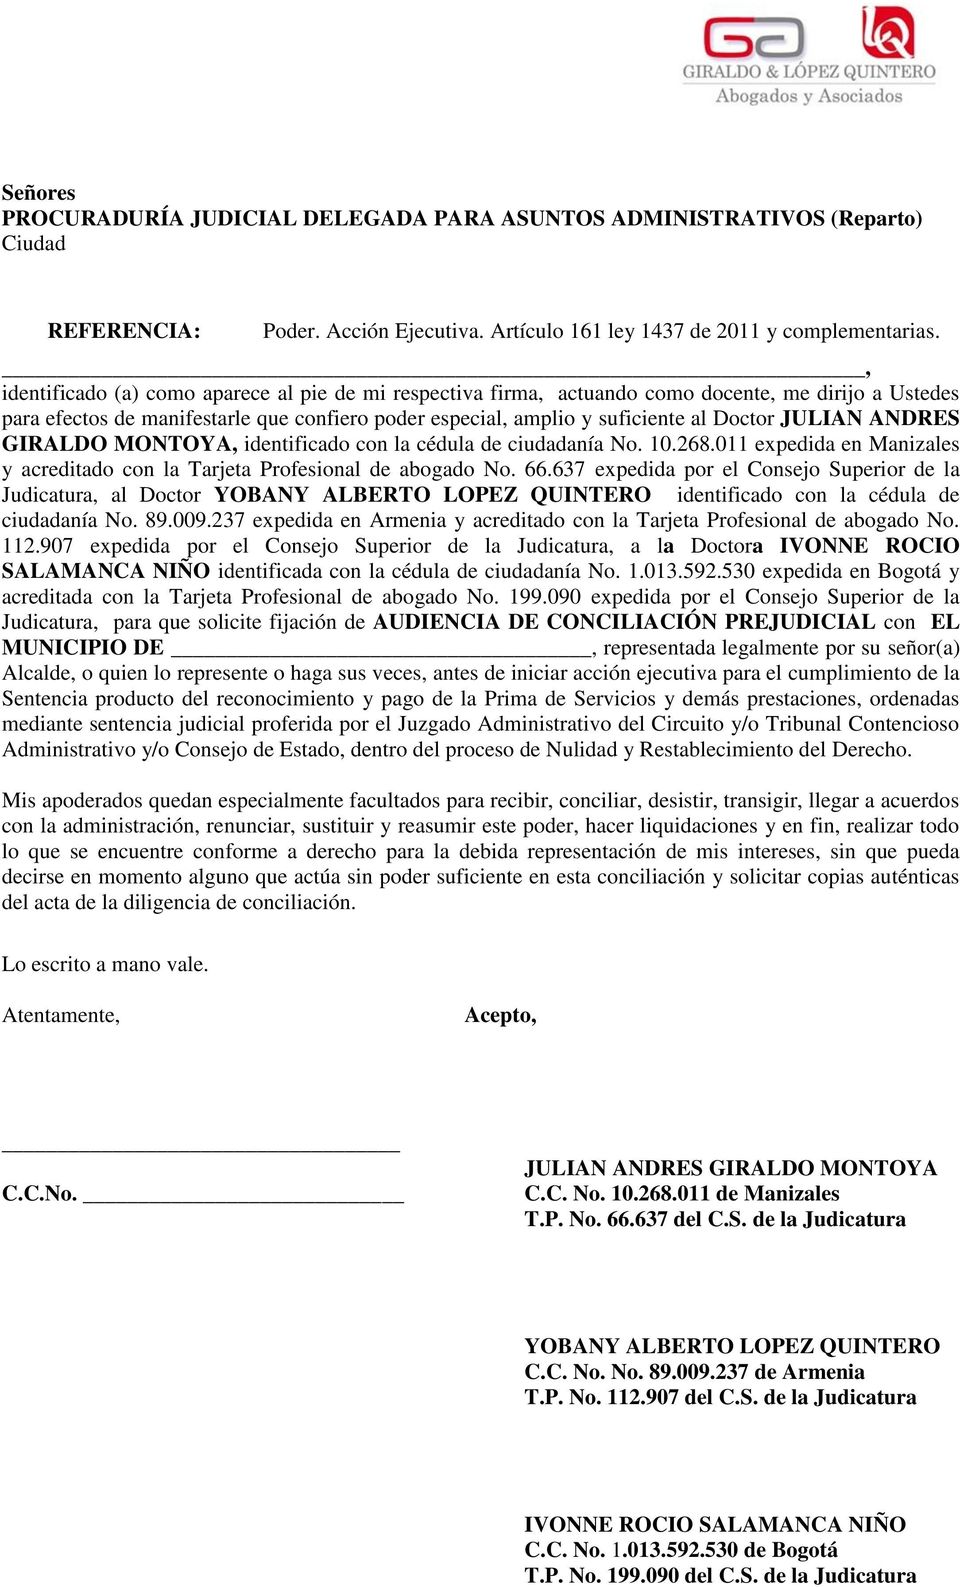 JULIAN ANDRES GIRALDO MONTOYA, identificado con la cédula de ciudadanía No. 10.268.011 expedida en Manizales y acreditado con la Tarjeta Profesional de abogado No. 66.